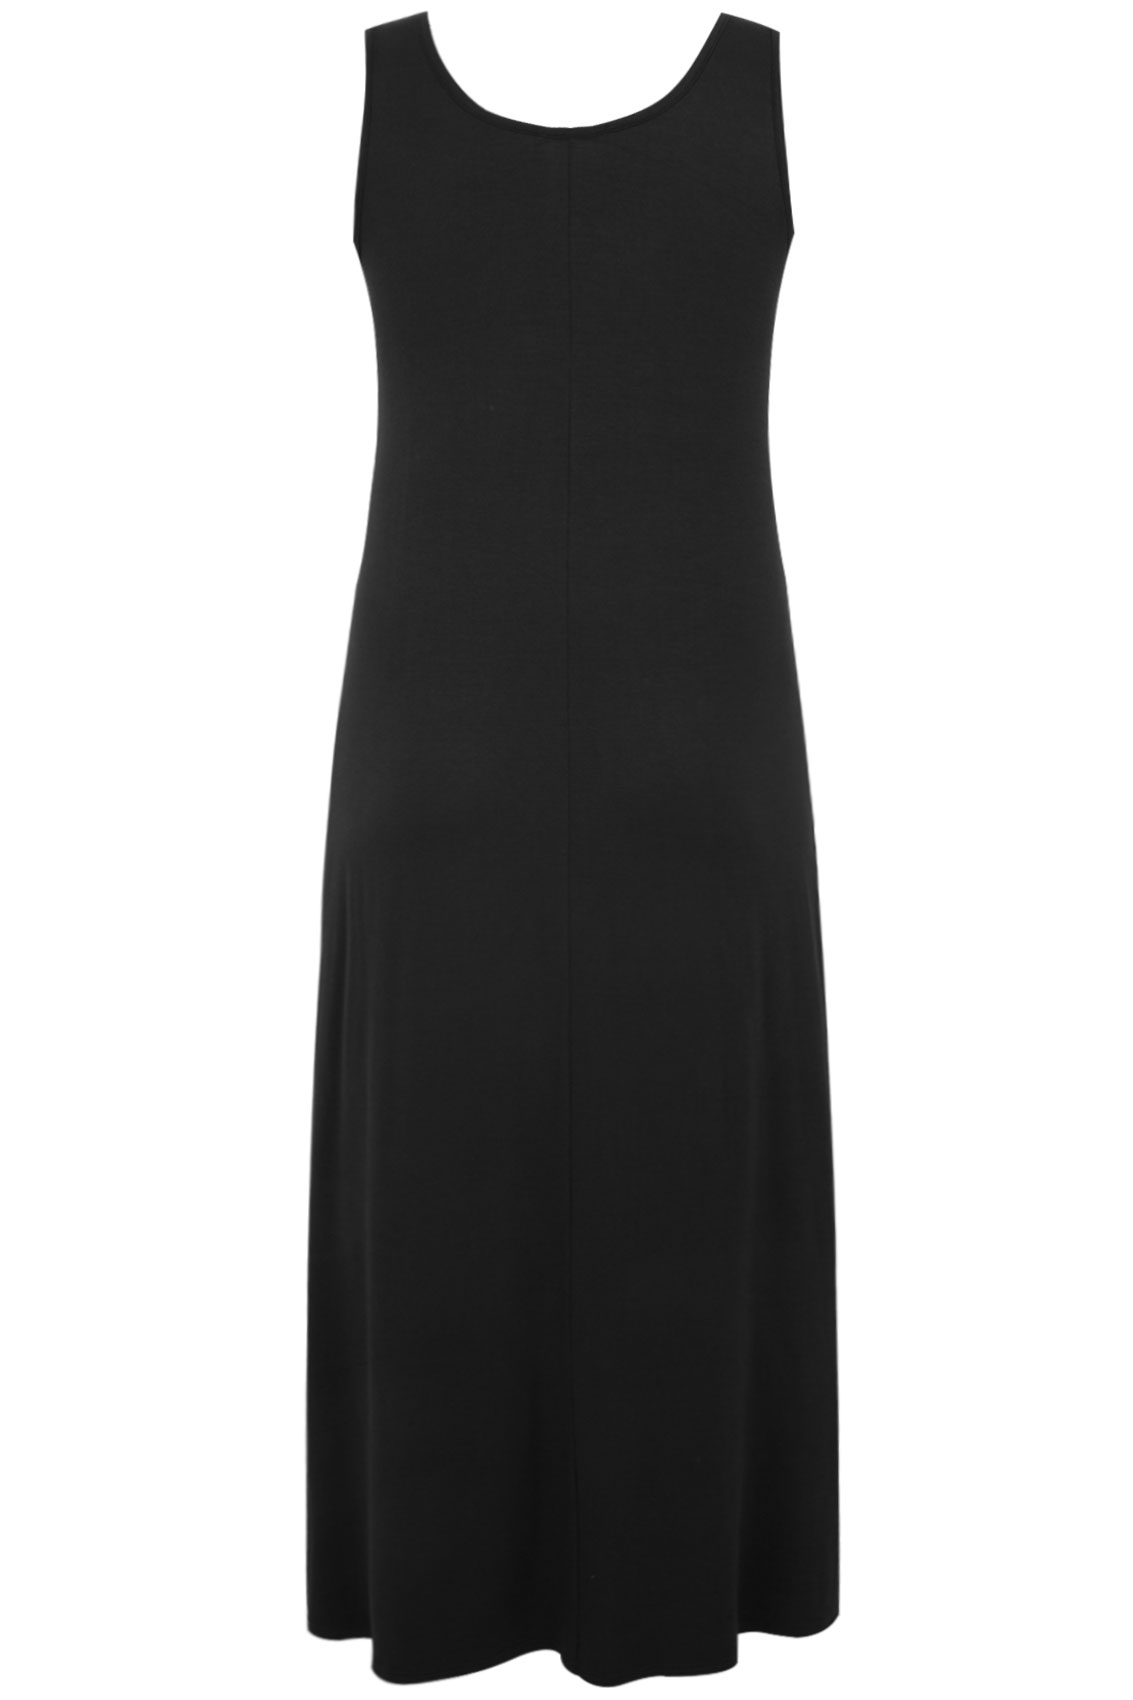 sleeveless black maxi dress